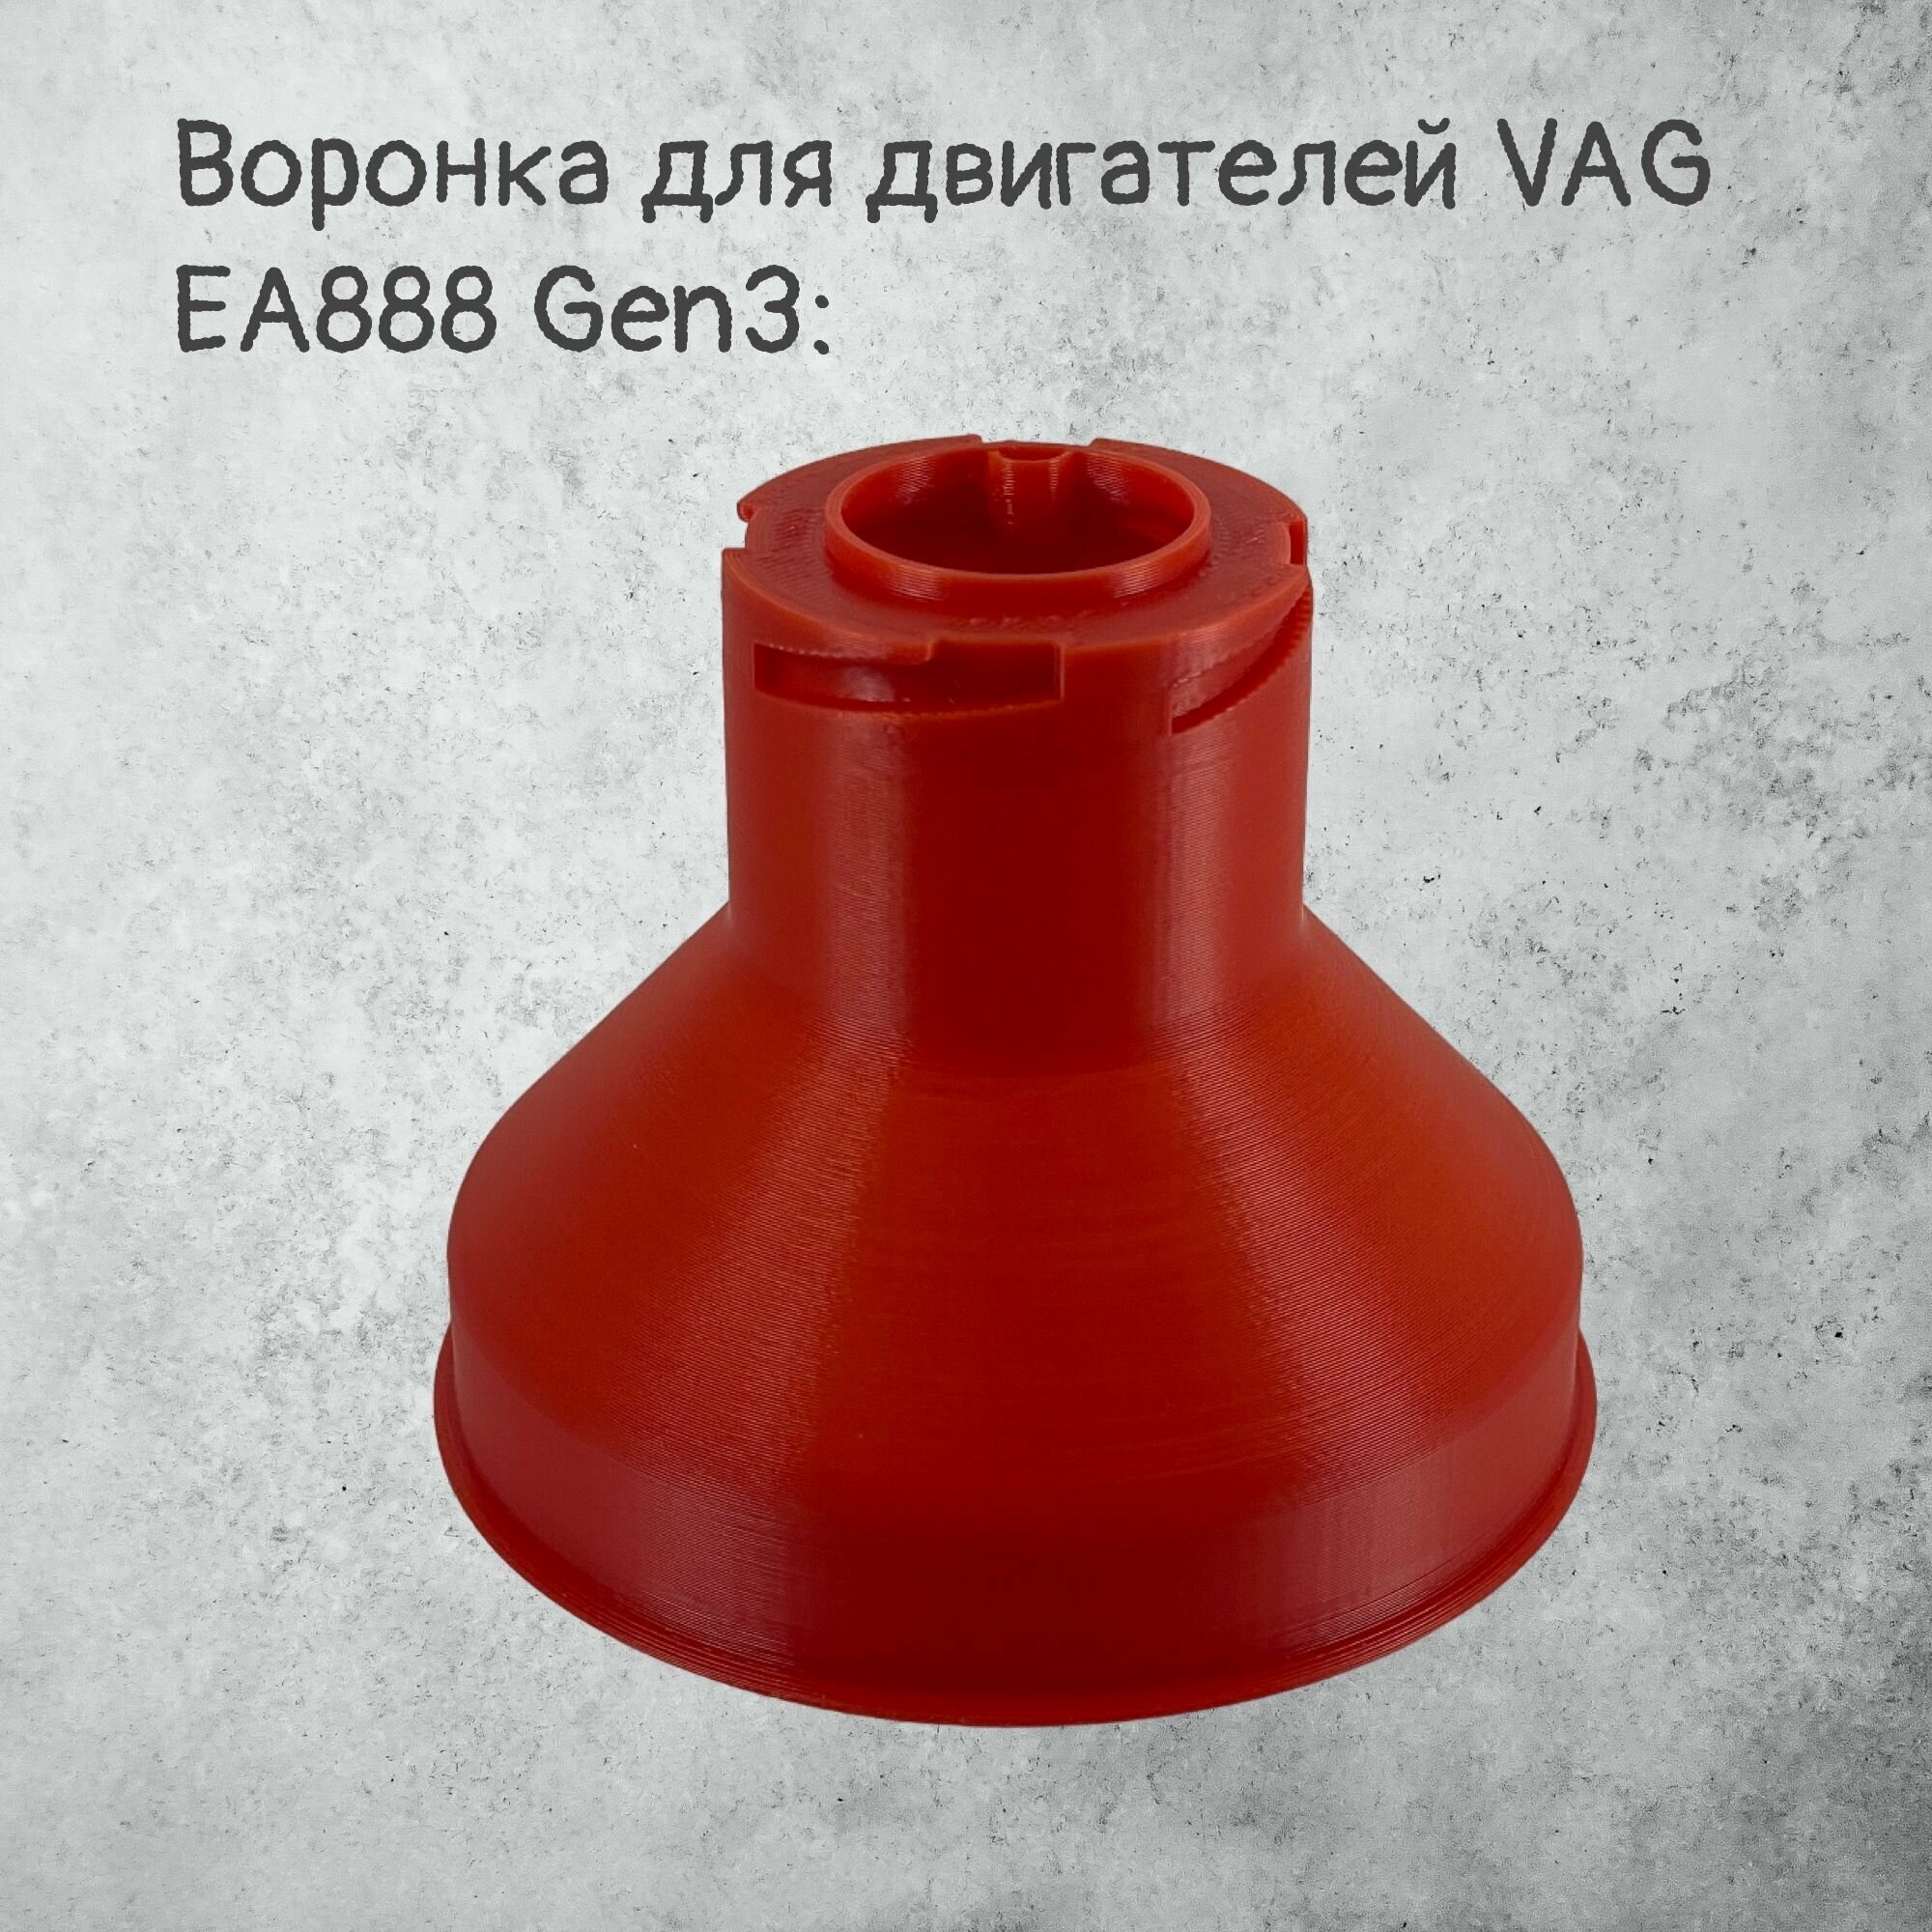 Воронка маслозаливная для VAG EA888 Gen3 Красная